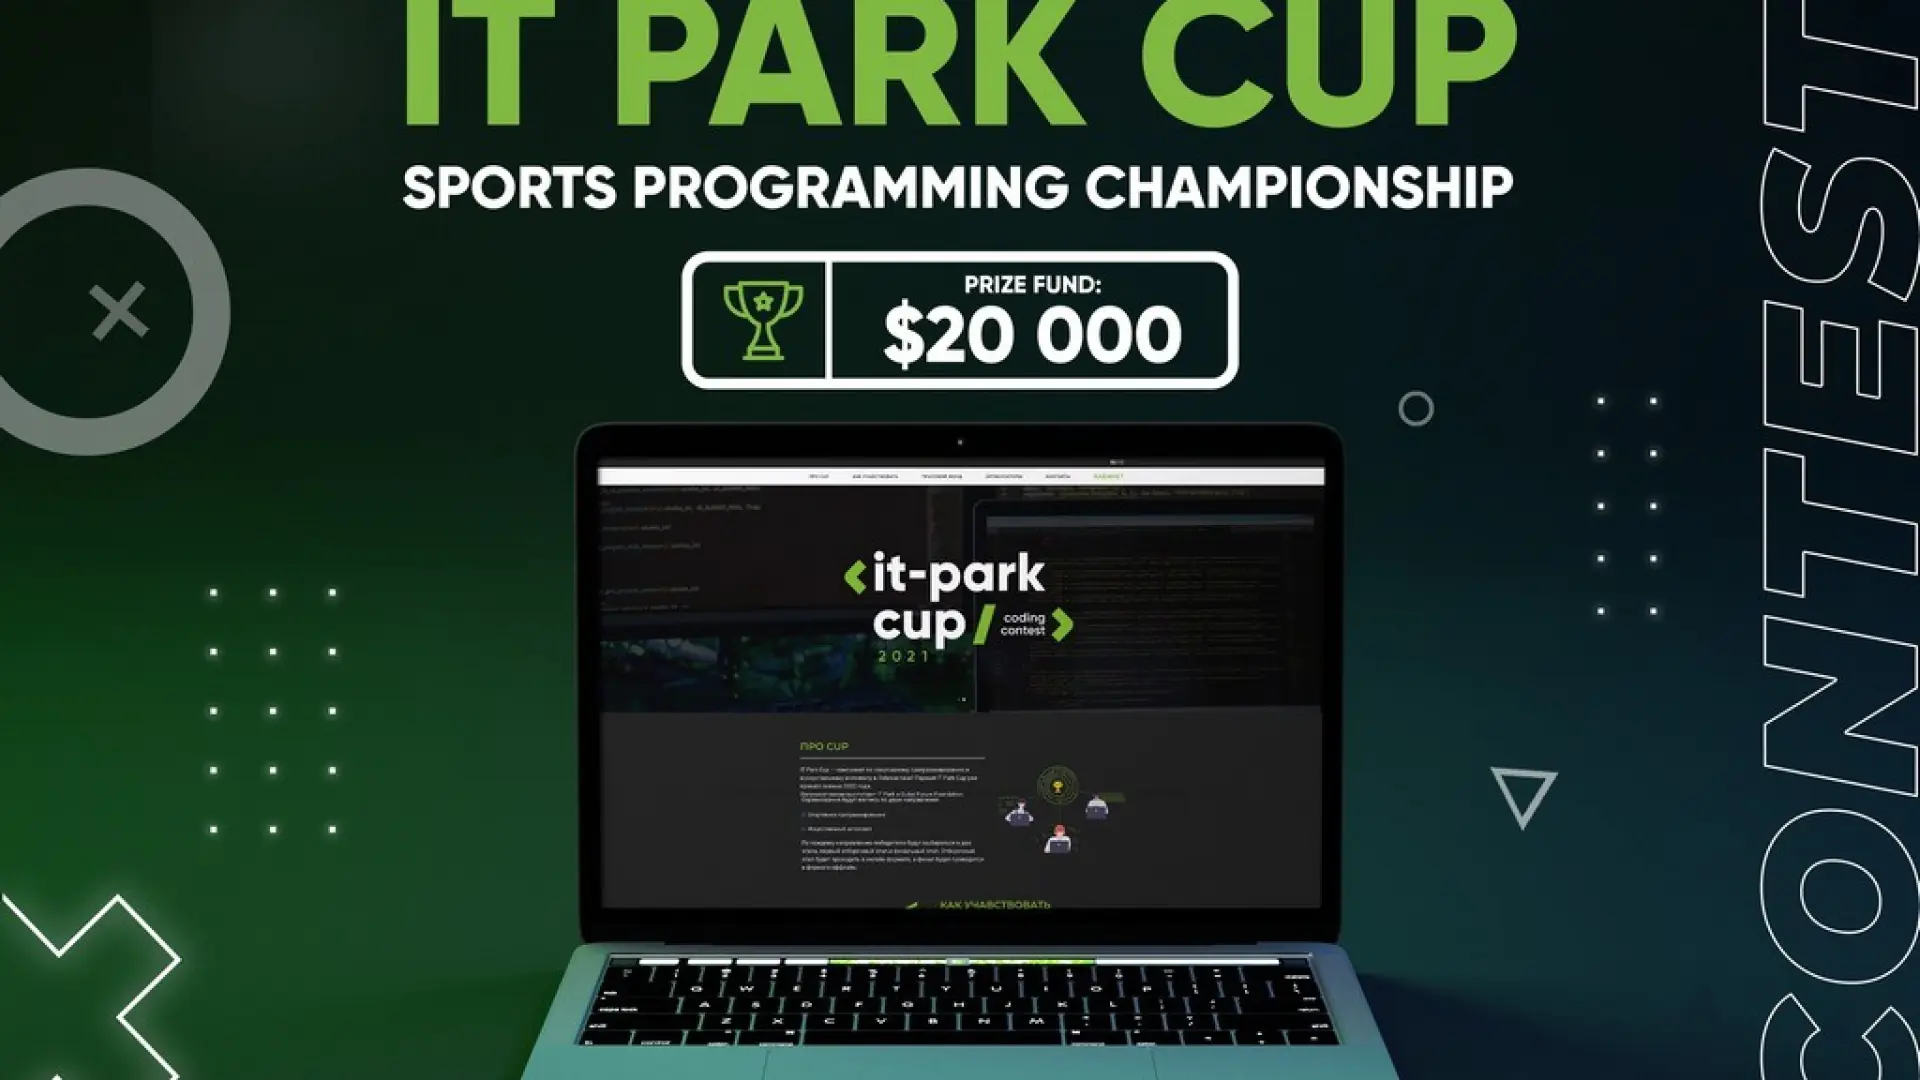 Umumiy sovrin jamg‘armasi $20000 bo‘lgan “IT  Park Cup”  dasturlash chempionati